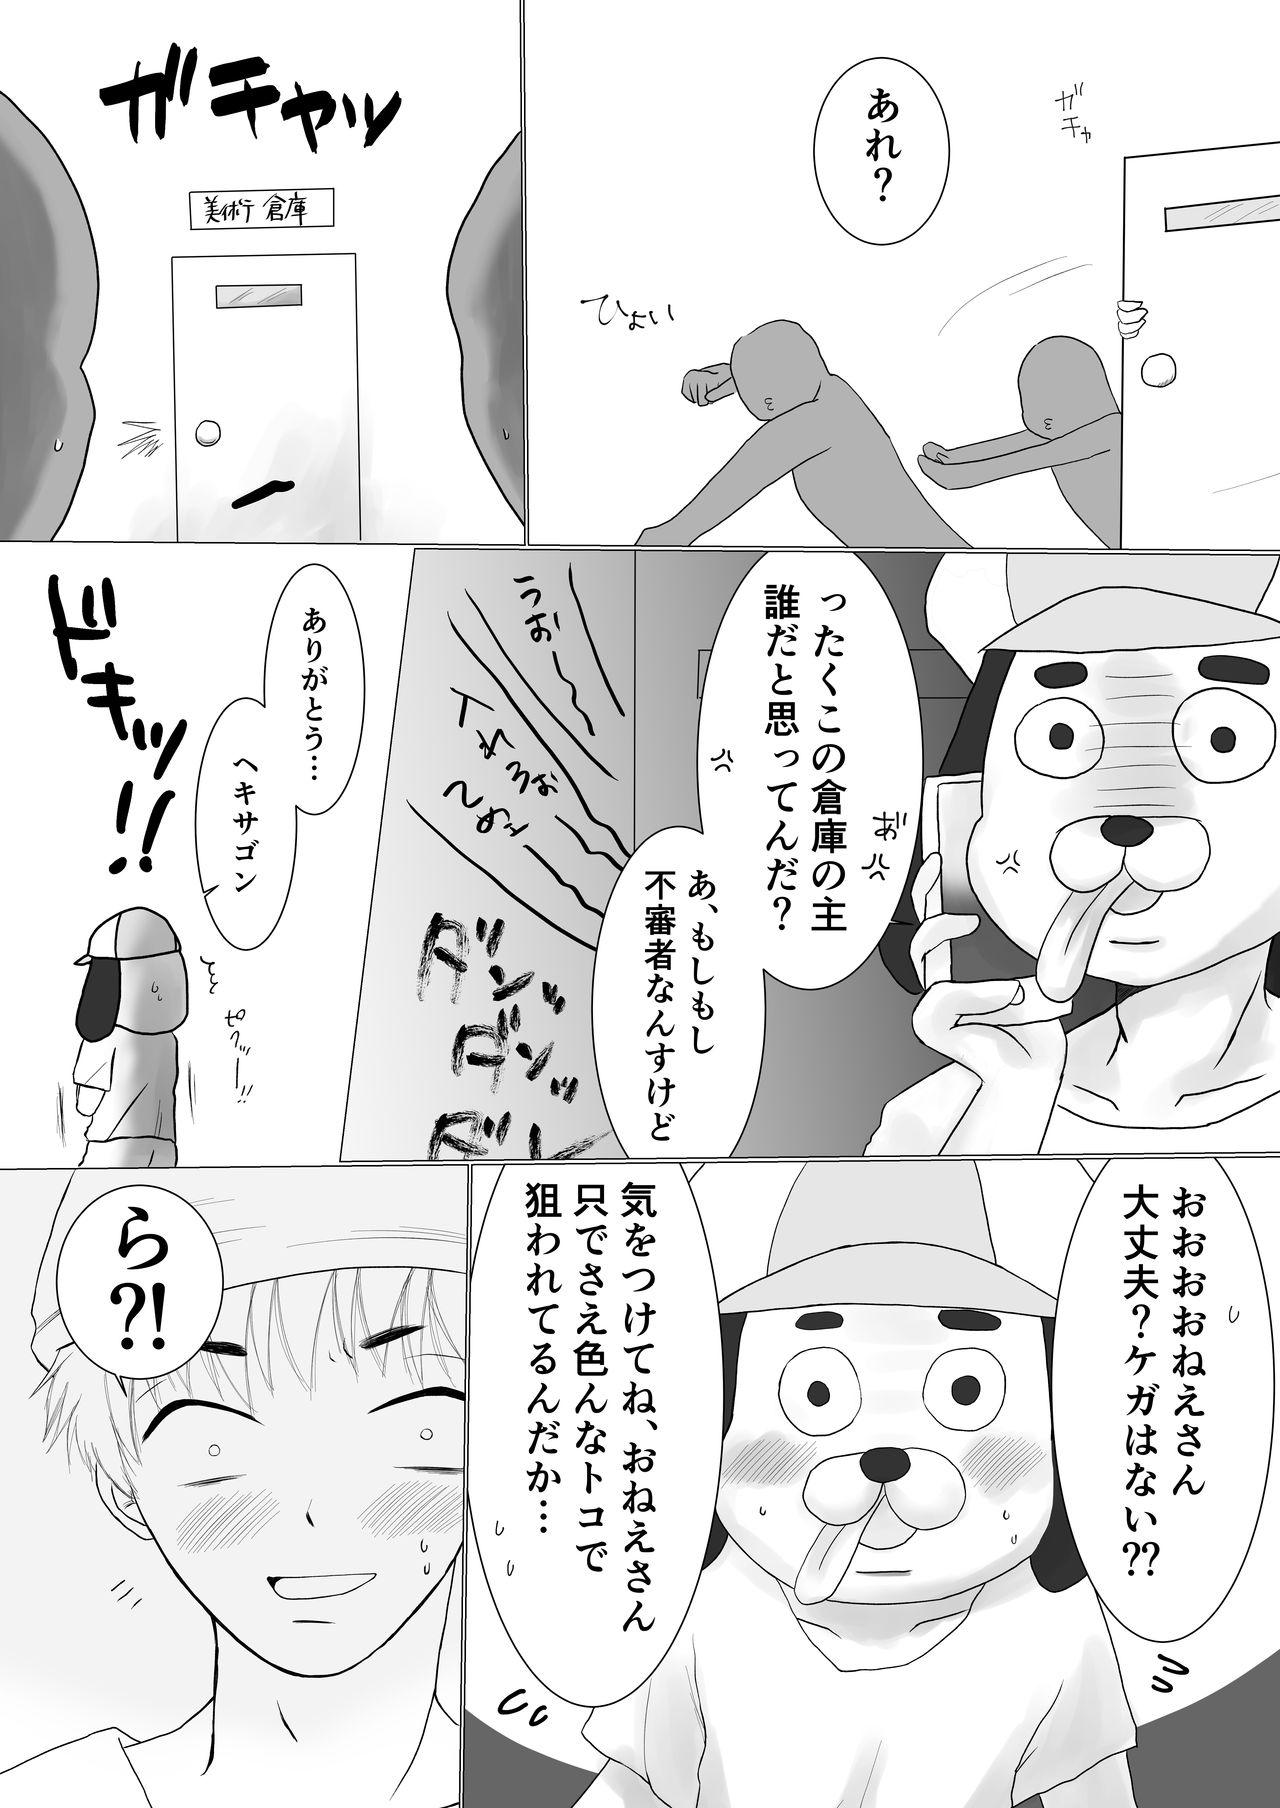 Old Man Onegai! Hekisagon - Osomatsu-san Natural - Page 9